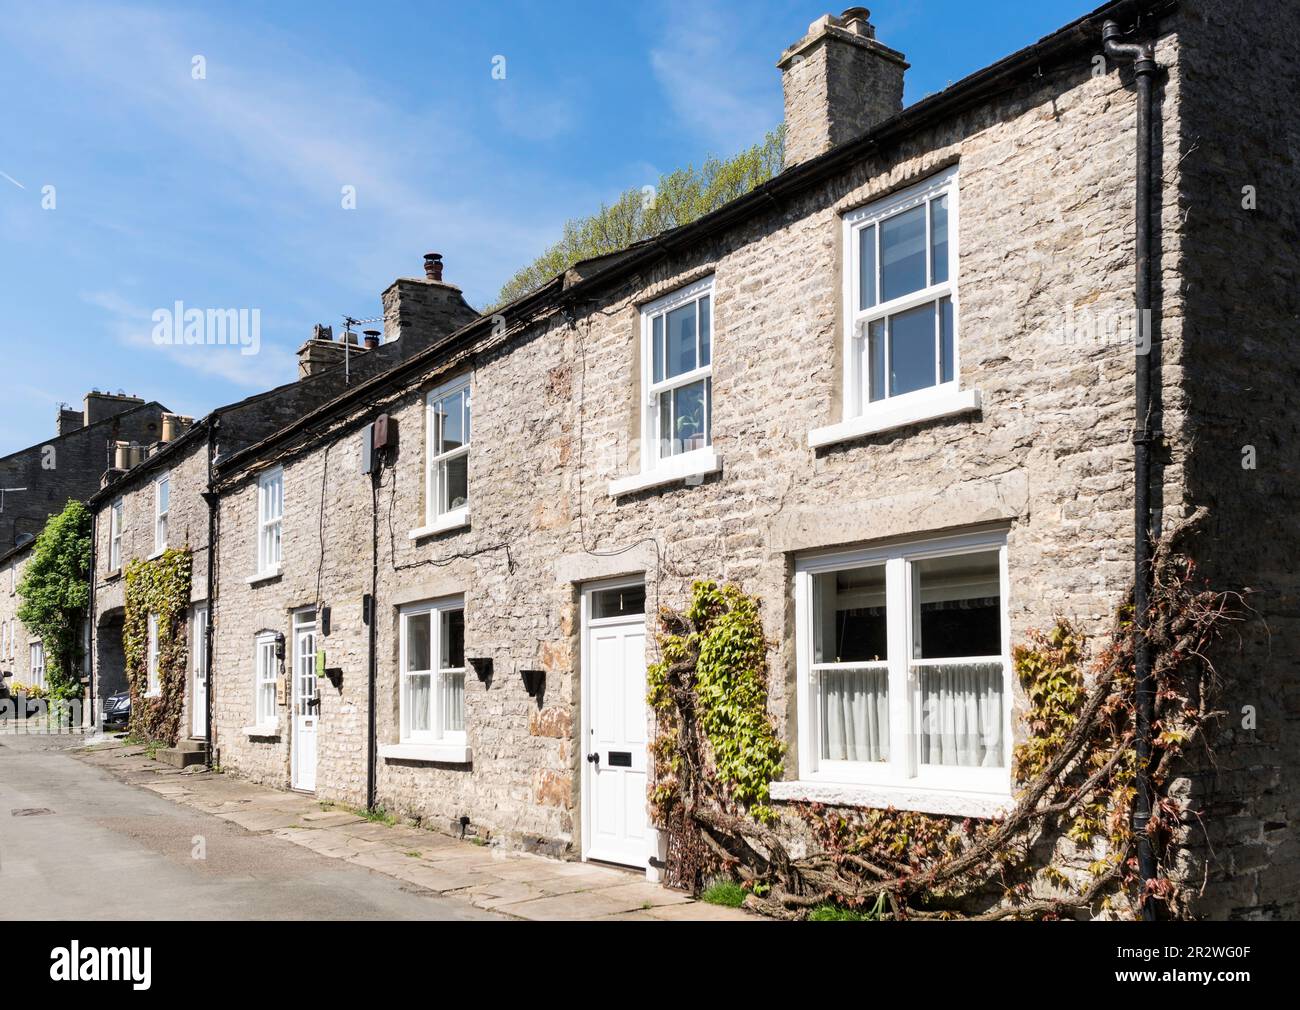 Shawl Terrace, stone cottages in Leyburn, North Yorkshire, England, UK Stock Photo